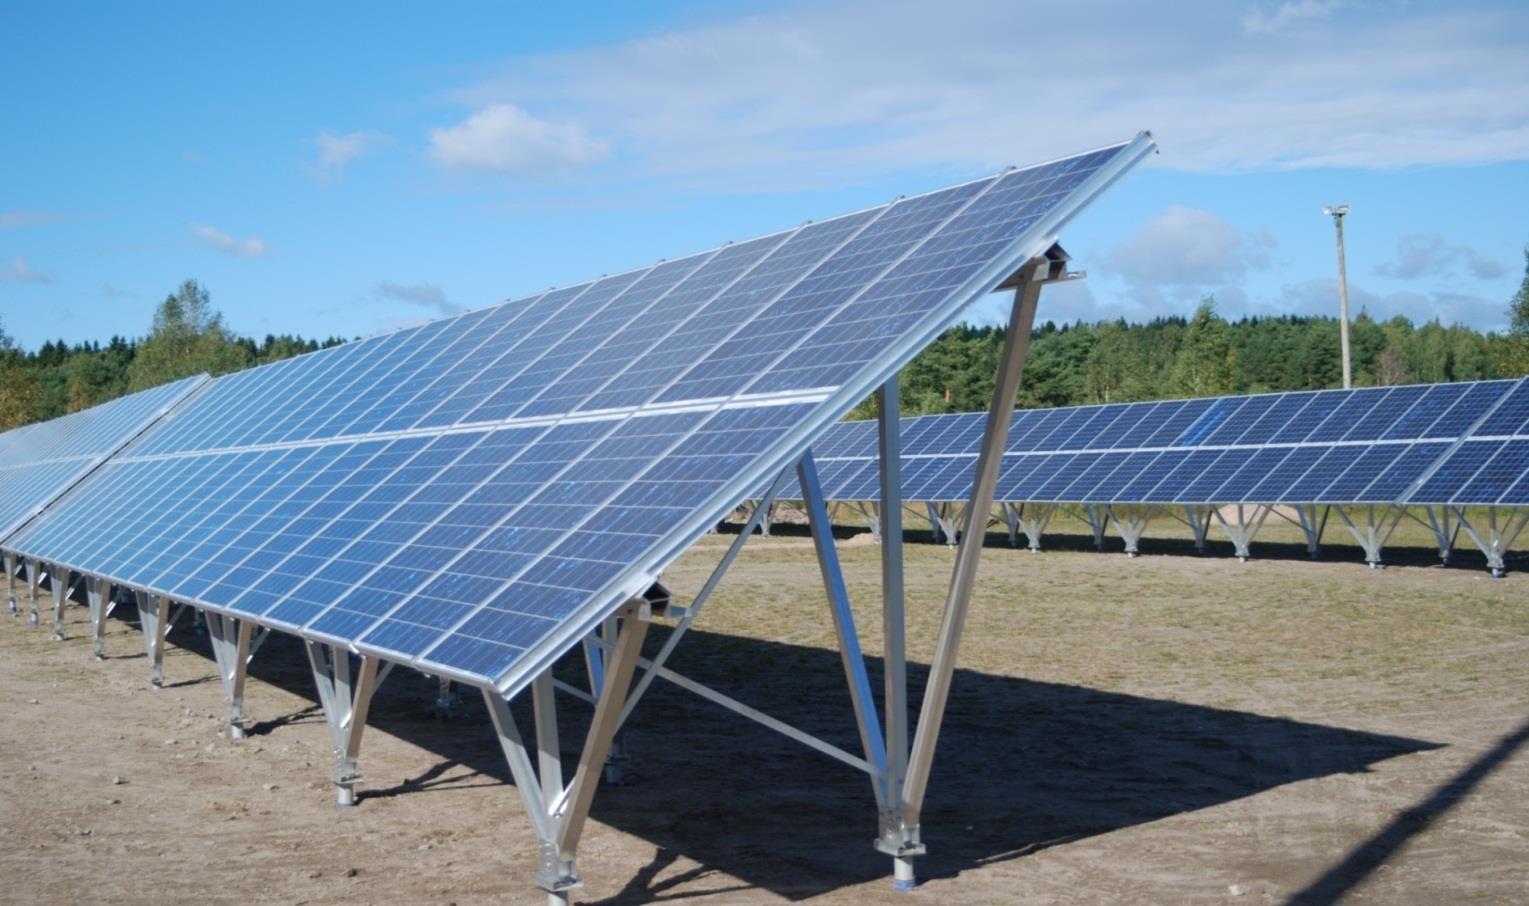 Exempel på forskningsprojekt på solenergi Fortum samarbetar med Glava Energicentrum inom solenergi m.m. I Glava finns drygt 240kW solel installerat Fortum äger ca.